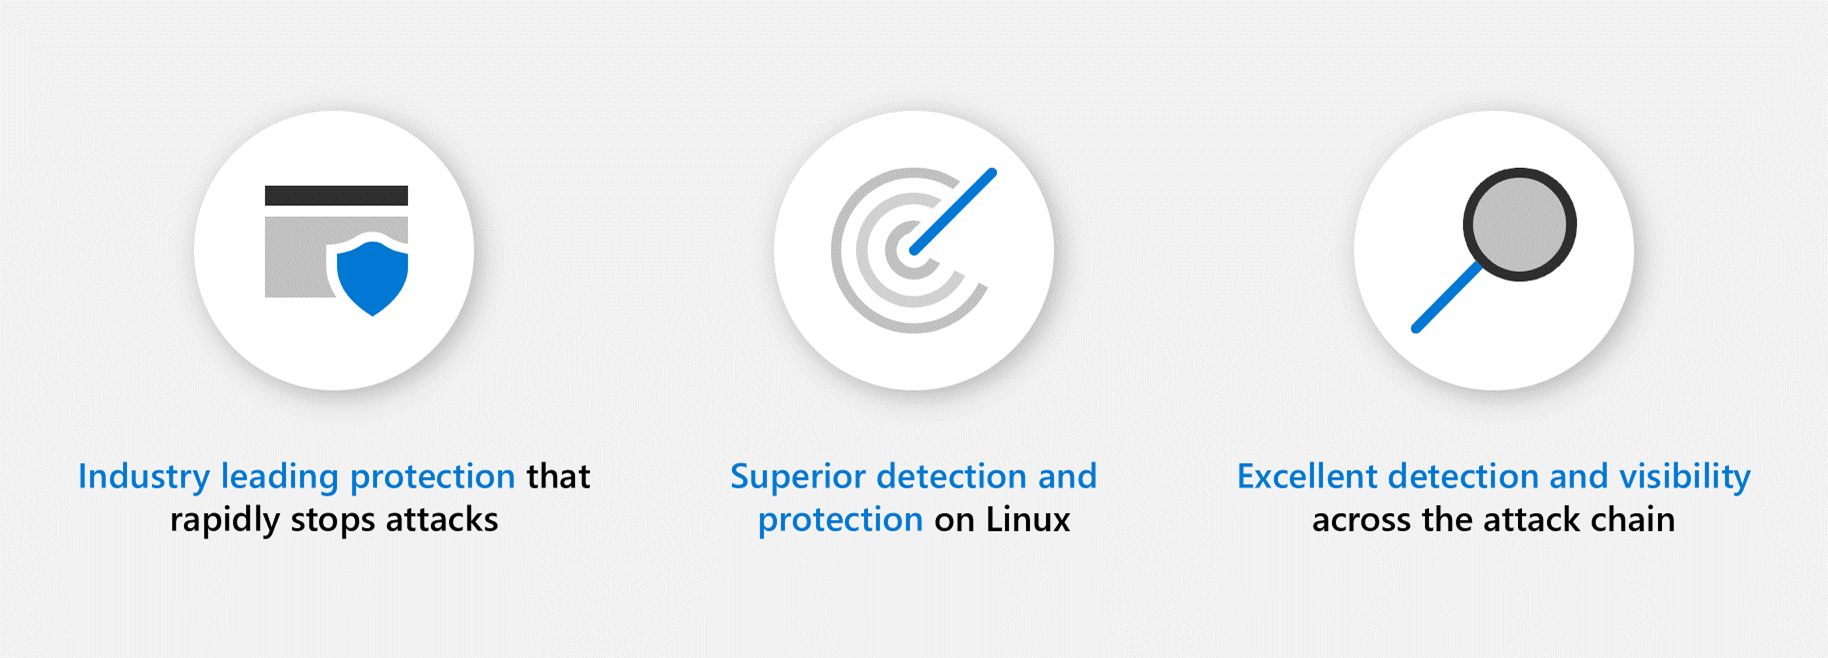 Microsoft が業界をリードする保護、Linux での優れた検出と保護、および接続チェーン全体での優れた検出と可視性を提供していることを示す 3 つの円形のアイコン グラフィック。